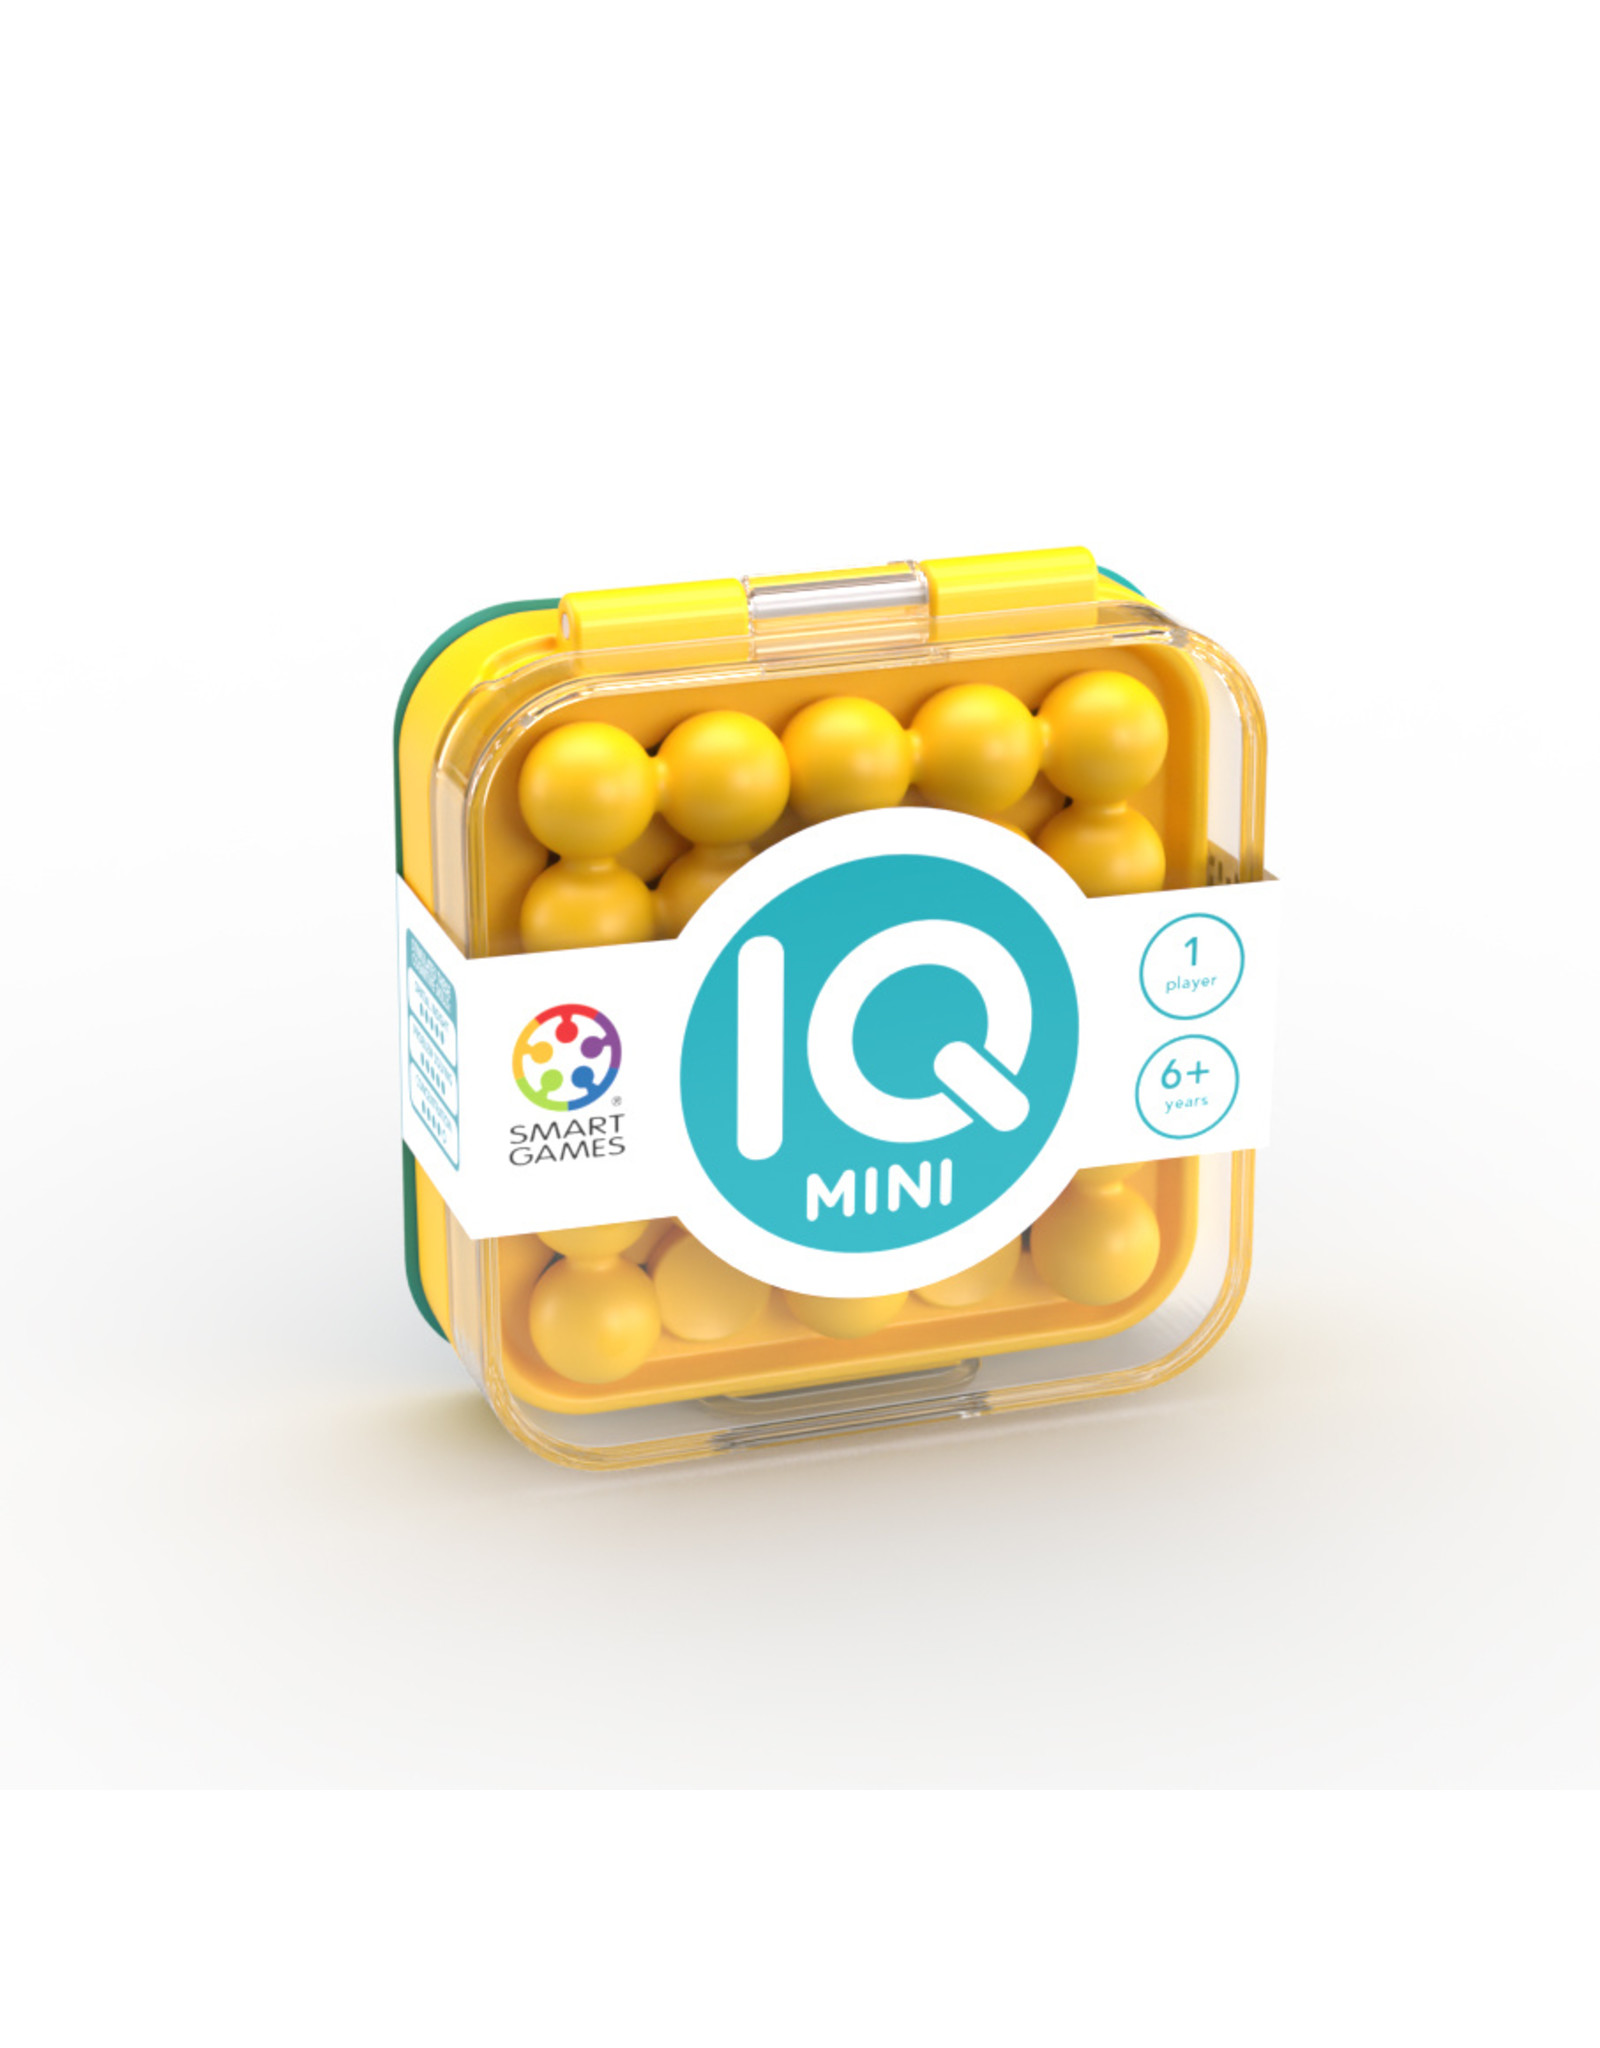 Smart Games IQ Mini